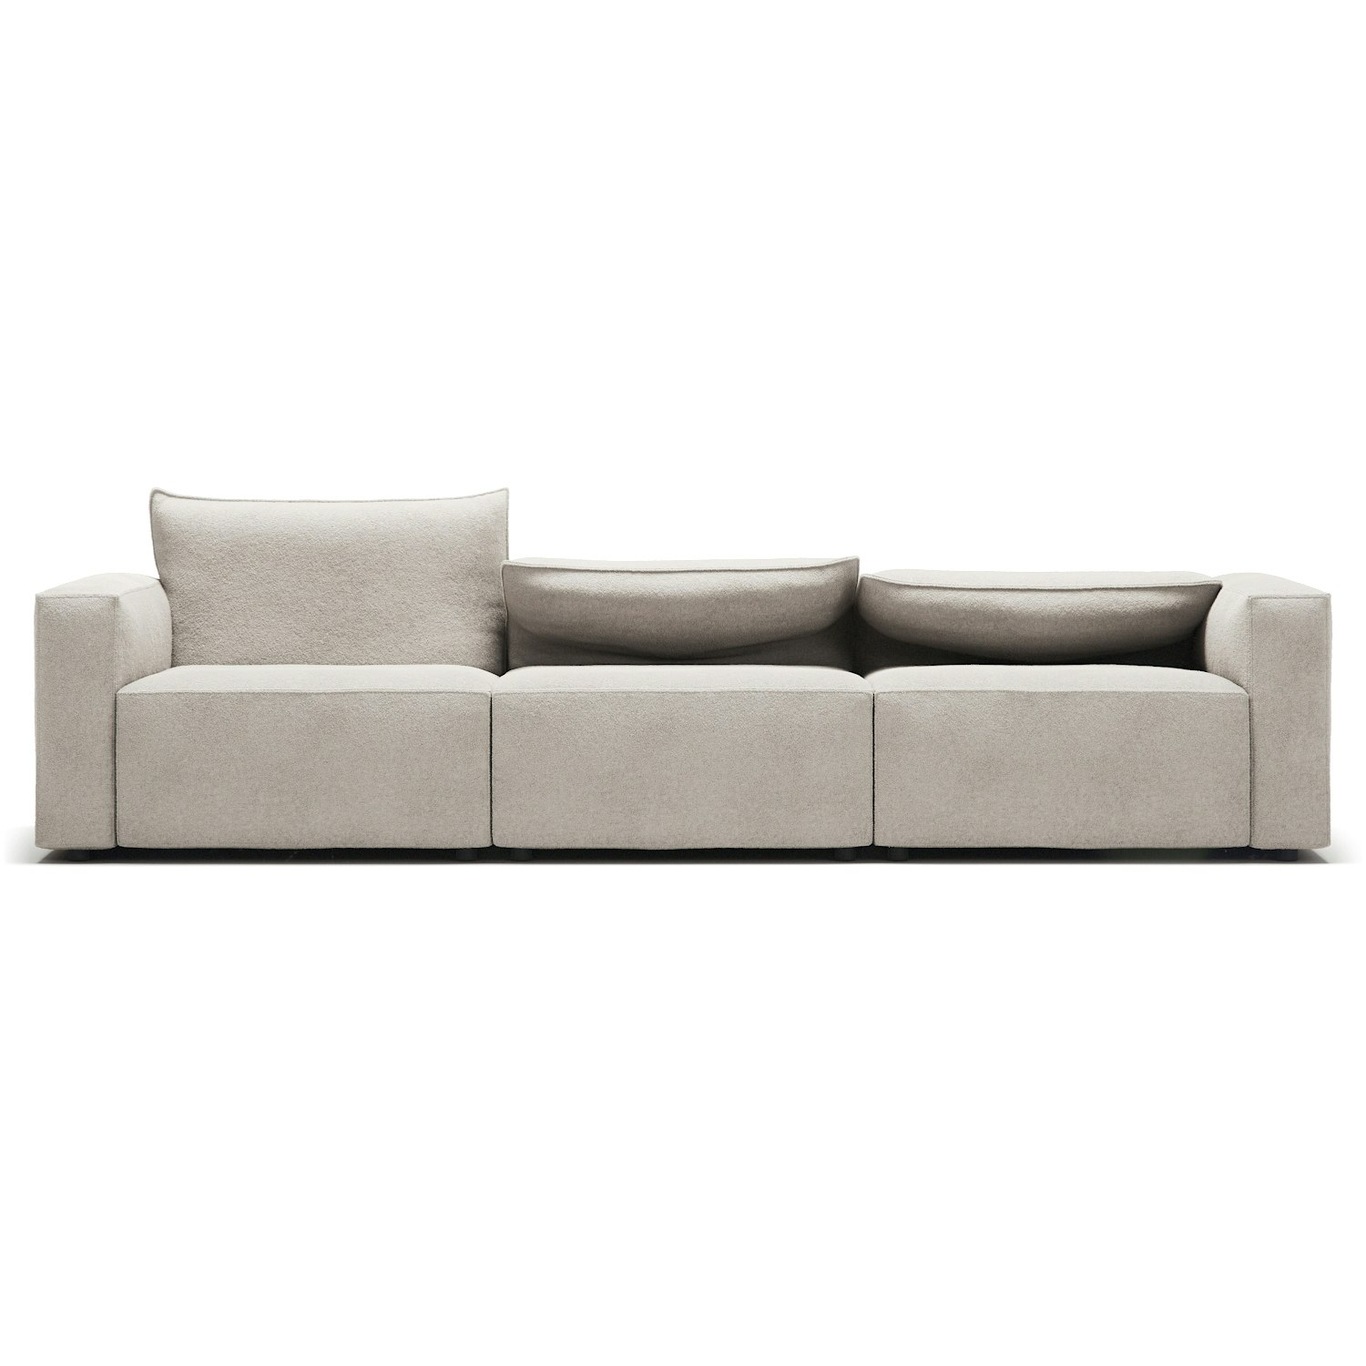 Moore 3-Seater Sofa, Plush Beige